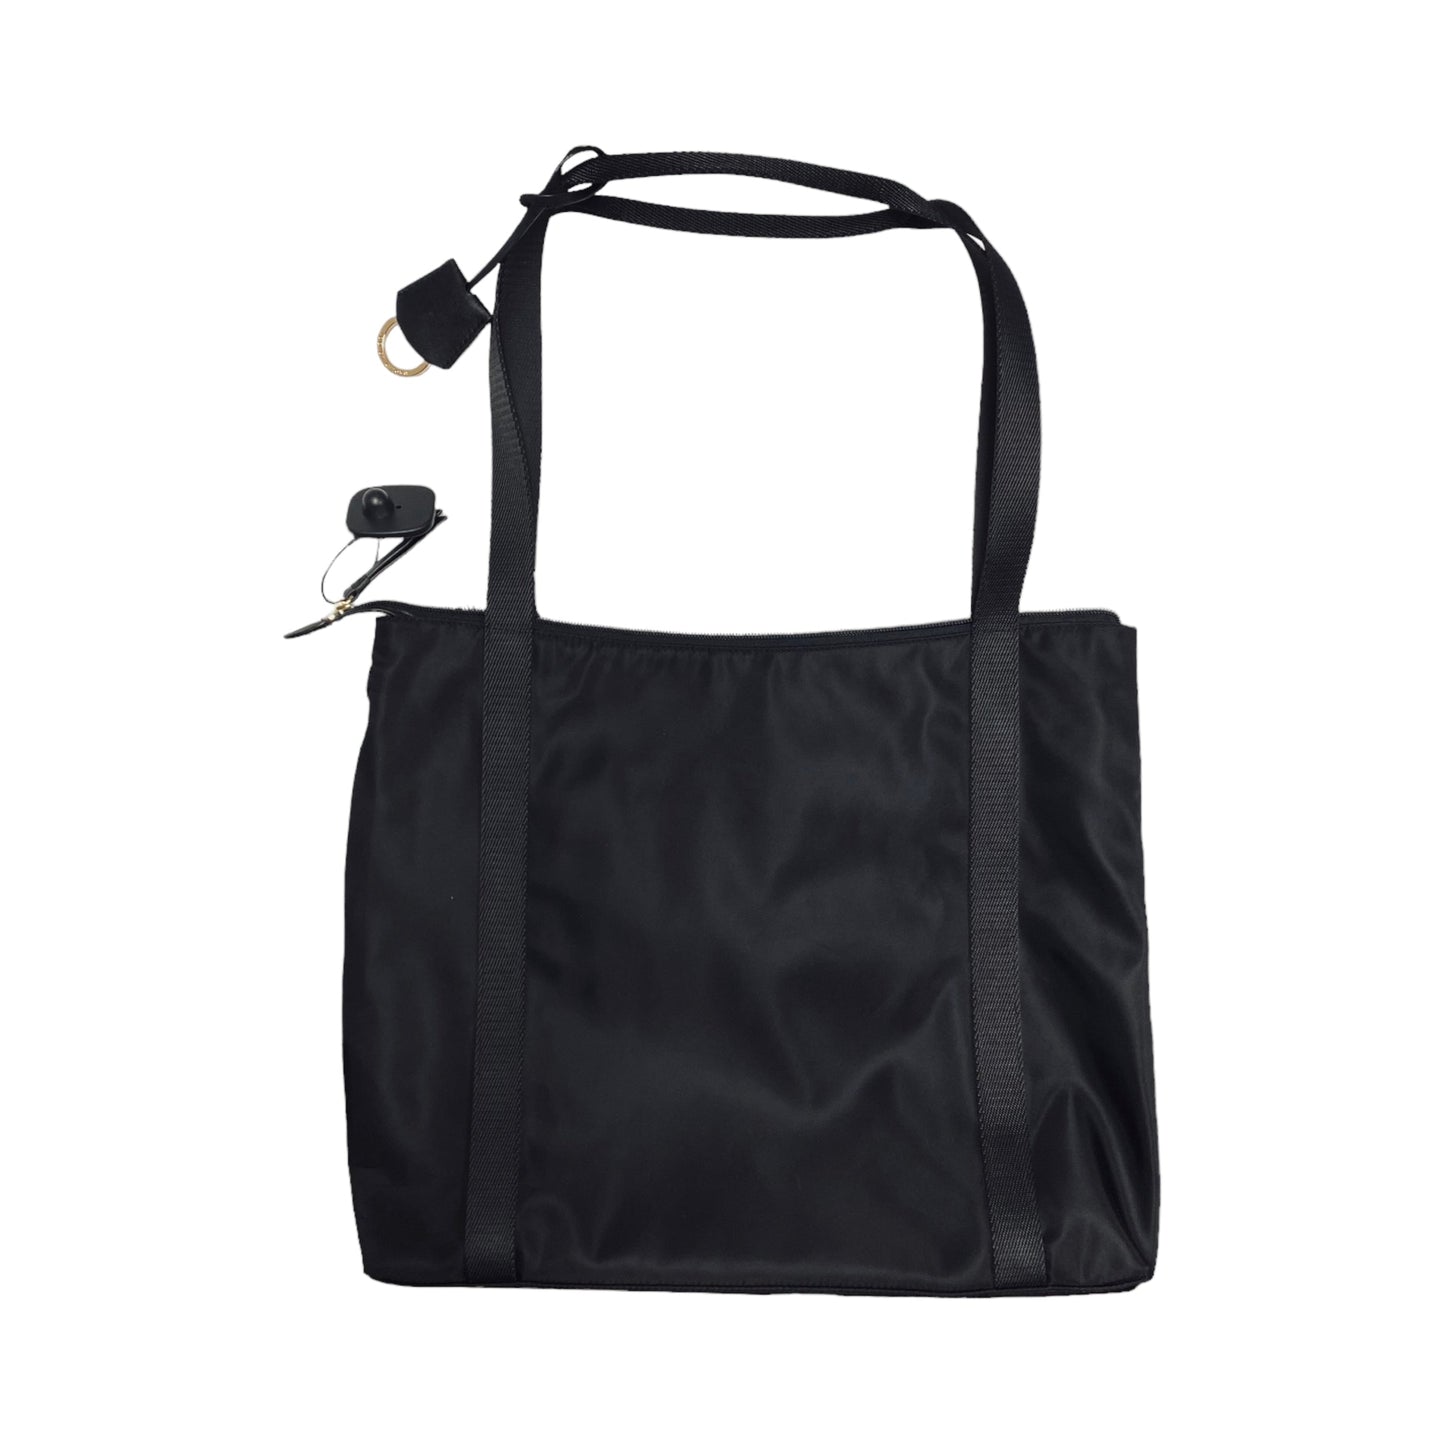 Handbag Designer By Radley London  Size: Large